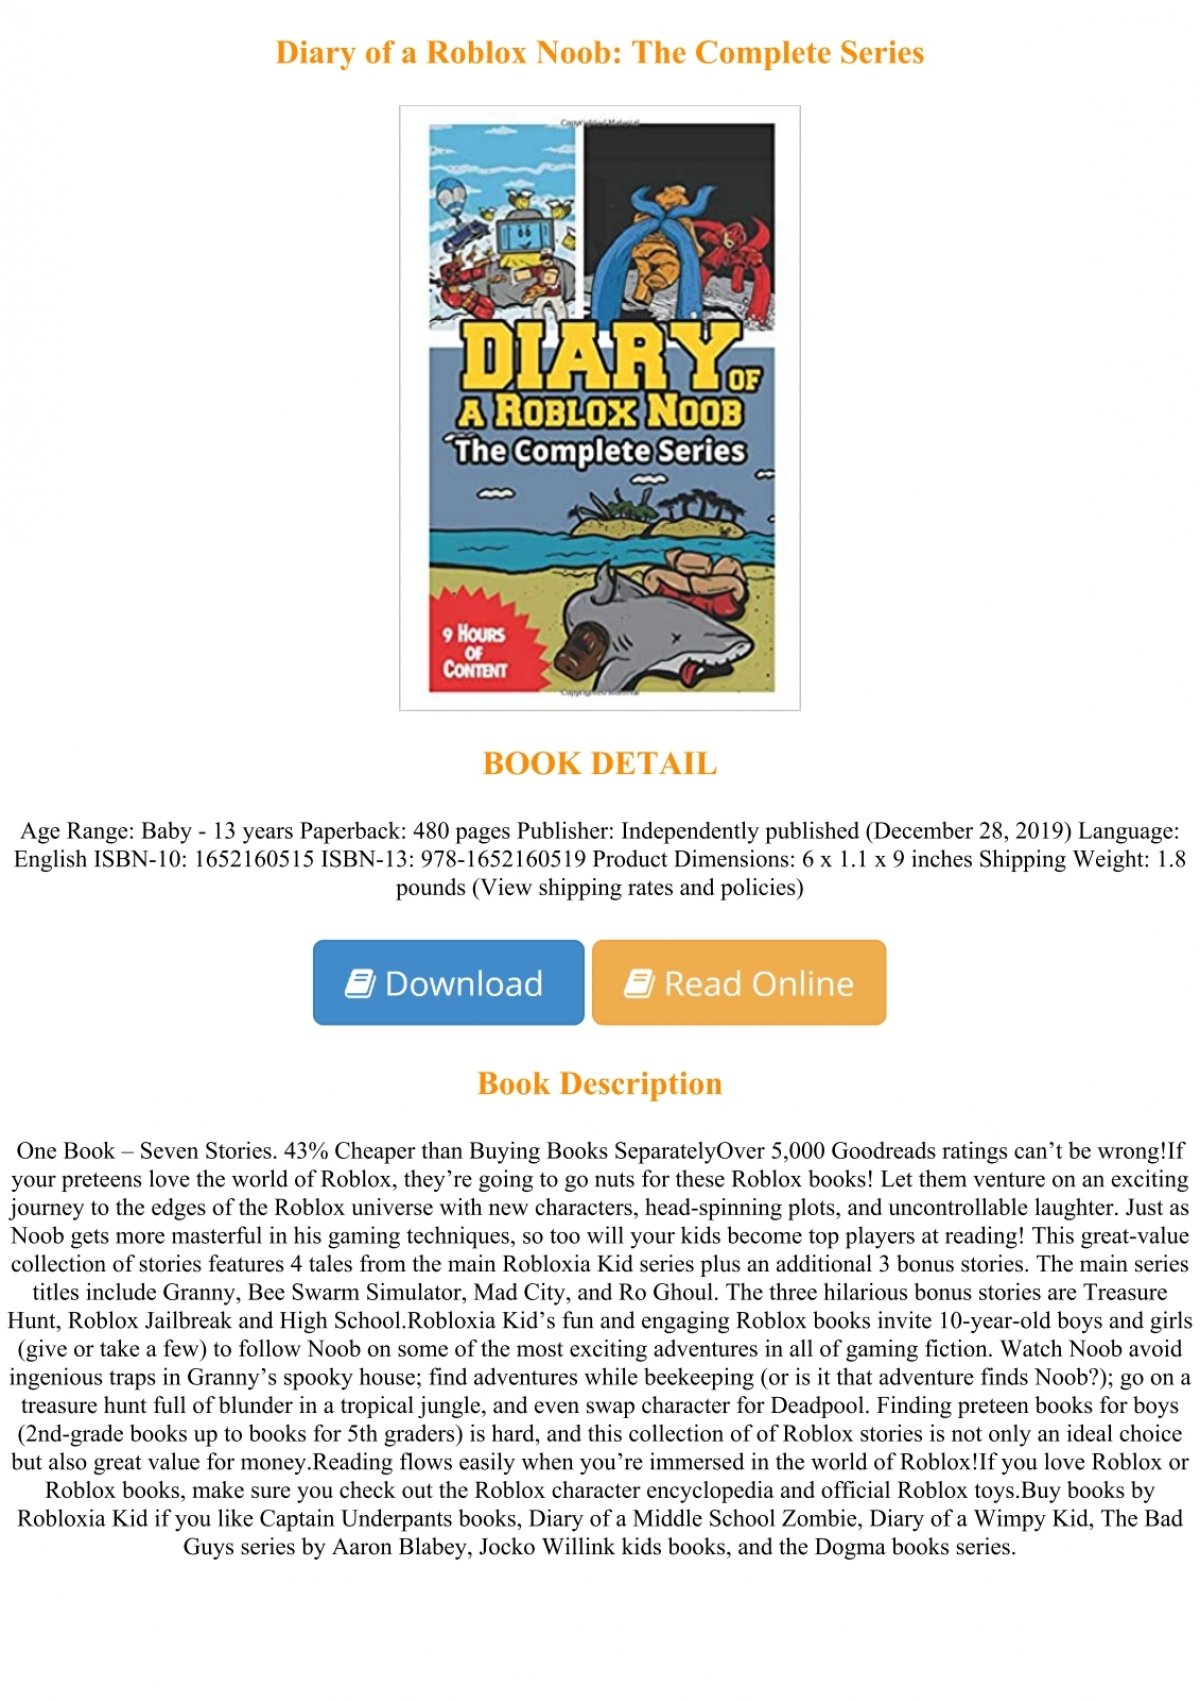 P D F Download Diary Of A Roblox Noob The Complete Series For Any Device - diary of a roblox noob treasure hunt